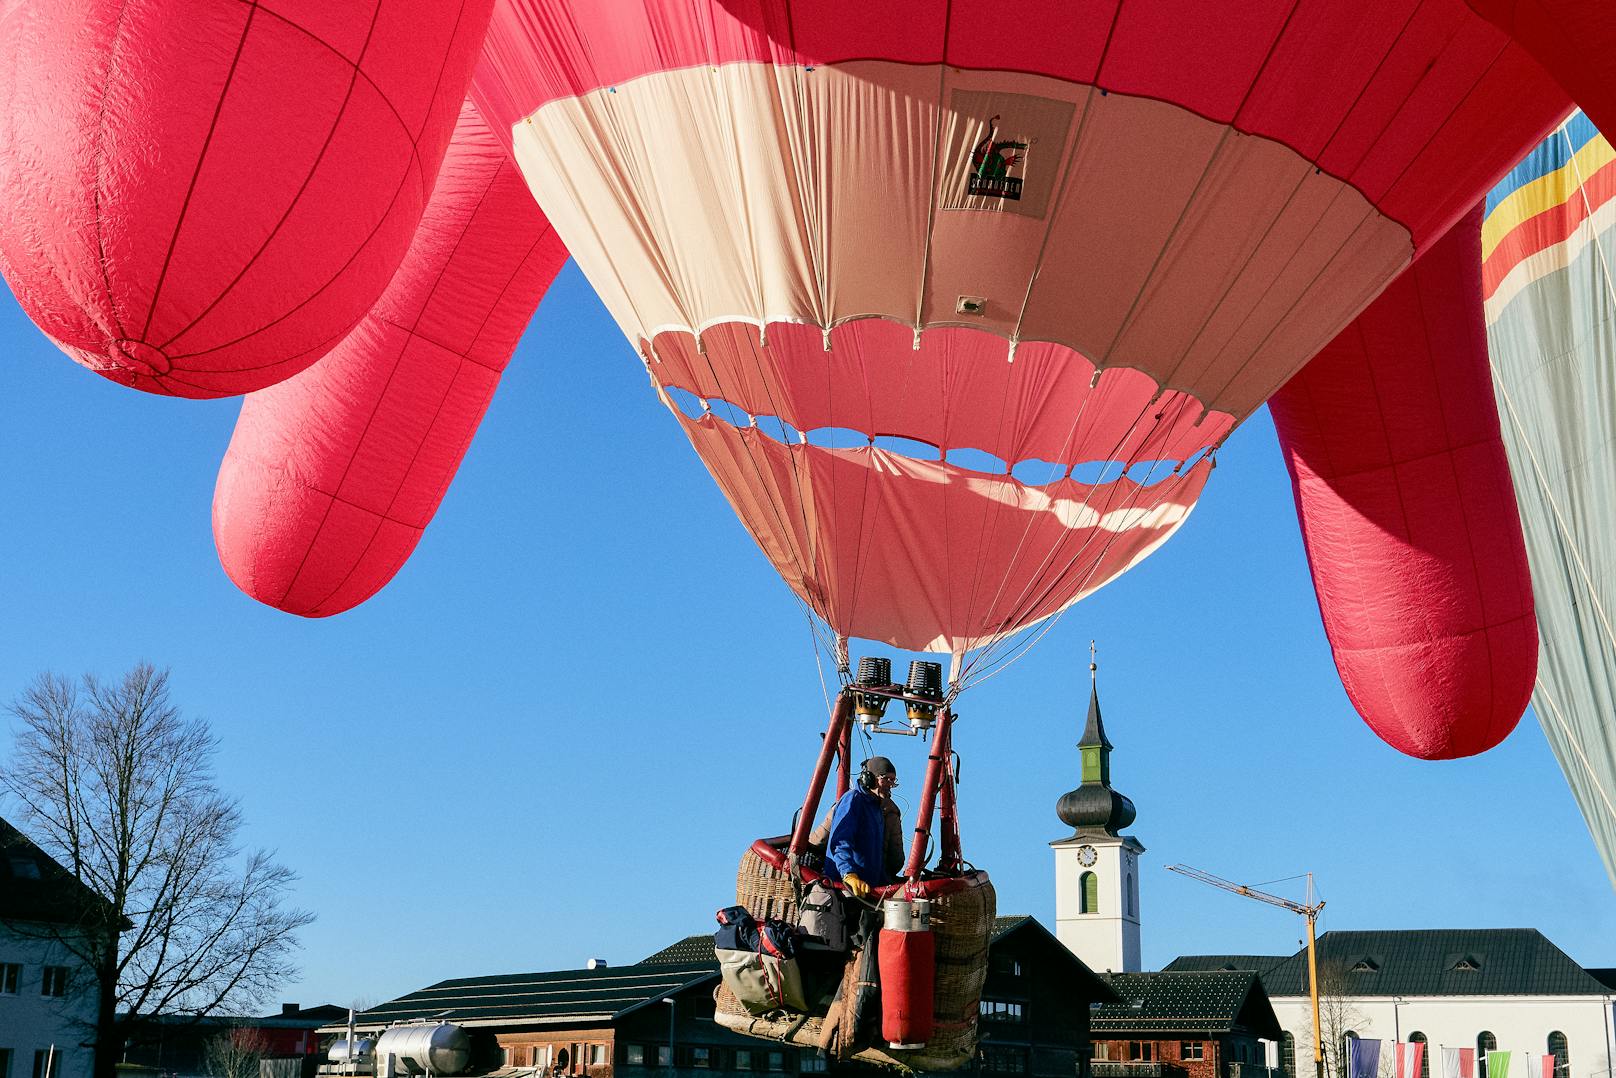 Der Heißluftballon in Form eines Kuheuters wird - bei gutem Wetter - am kommenden Nationalfeiertag über Wien schweben. Die "soziale Skulptur" der Wiener  Künstlerin Barbara Anna Husar soll für den Wertewandel stehen.